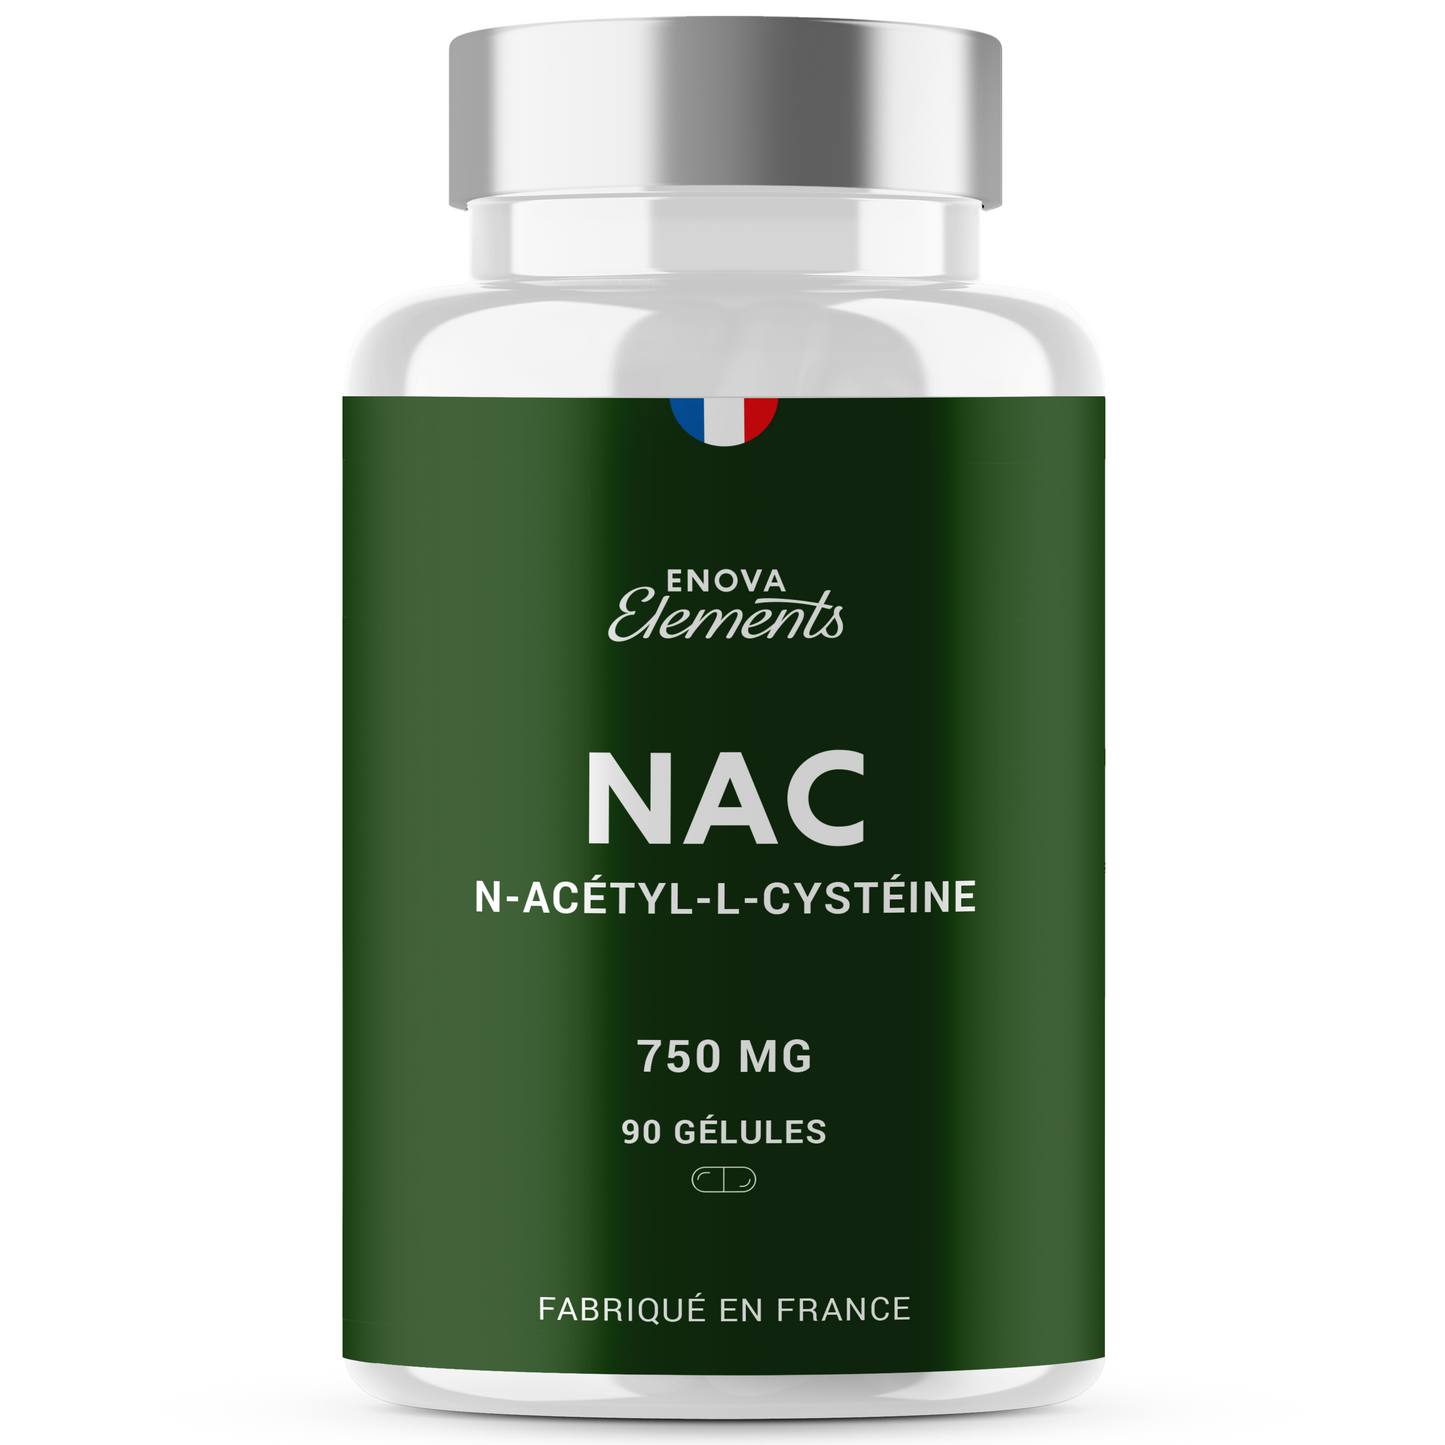 NAC - N-Acétyl-Cystéine - Antioxydant, Immunité, Détoxifiant